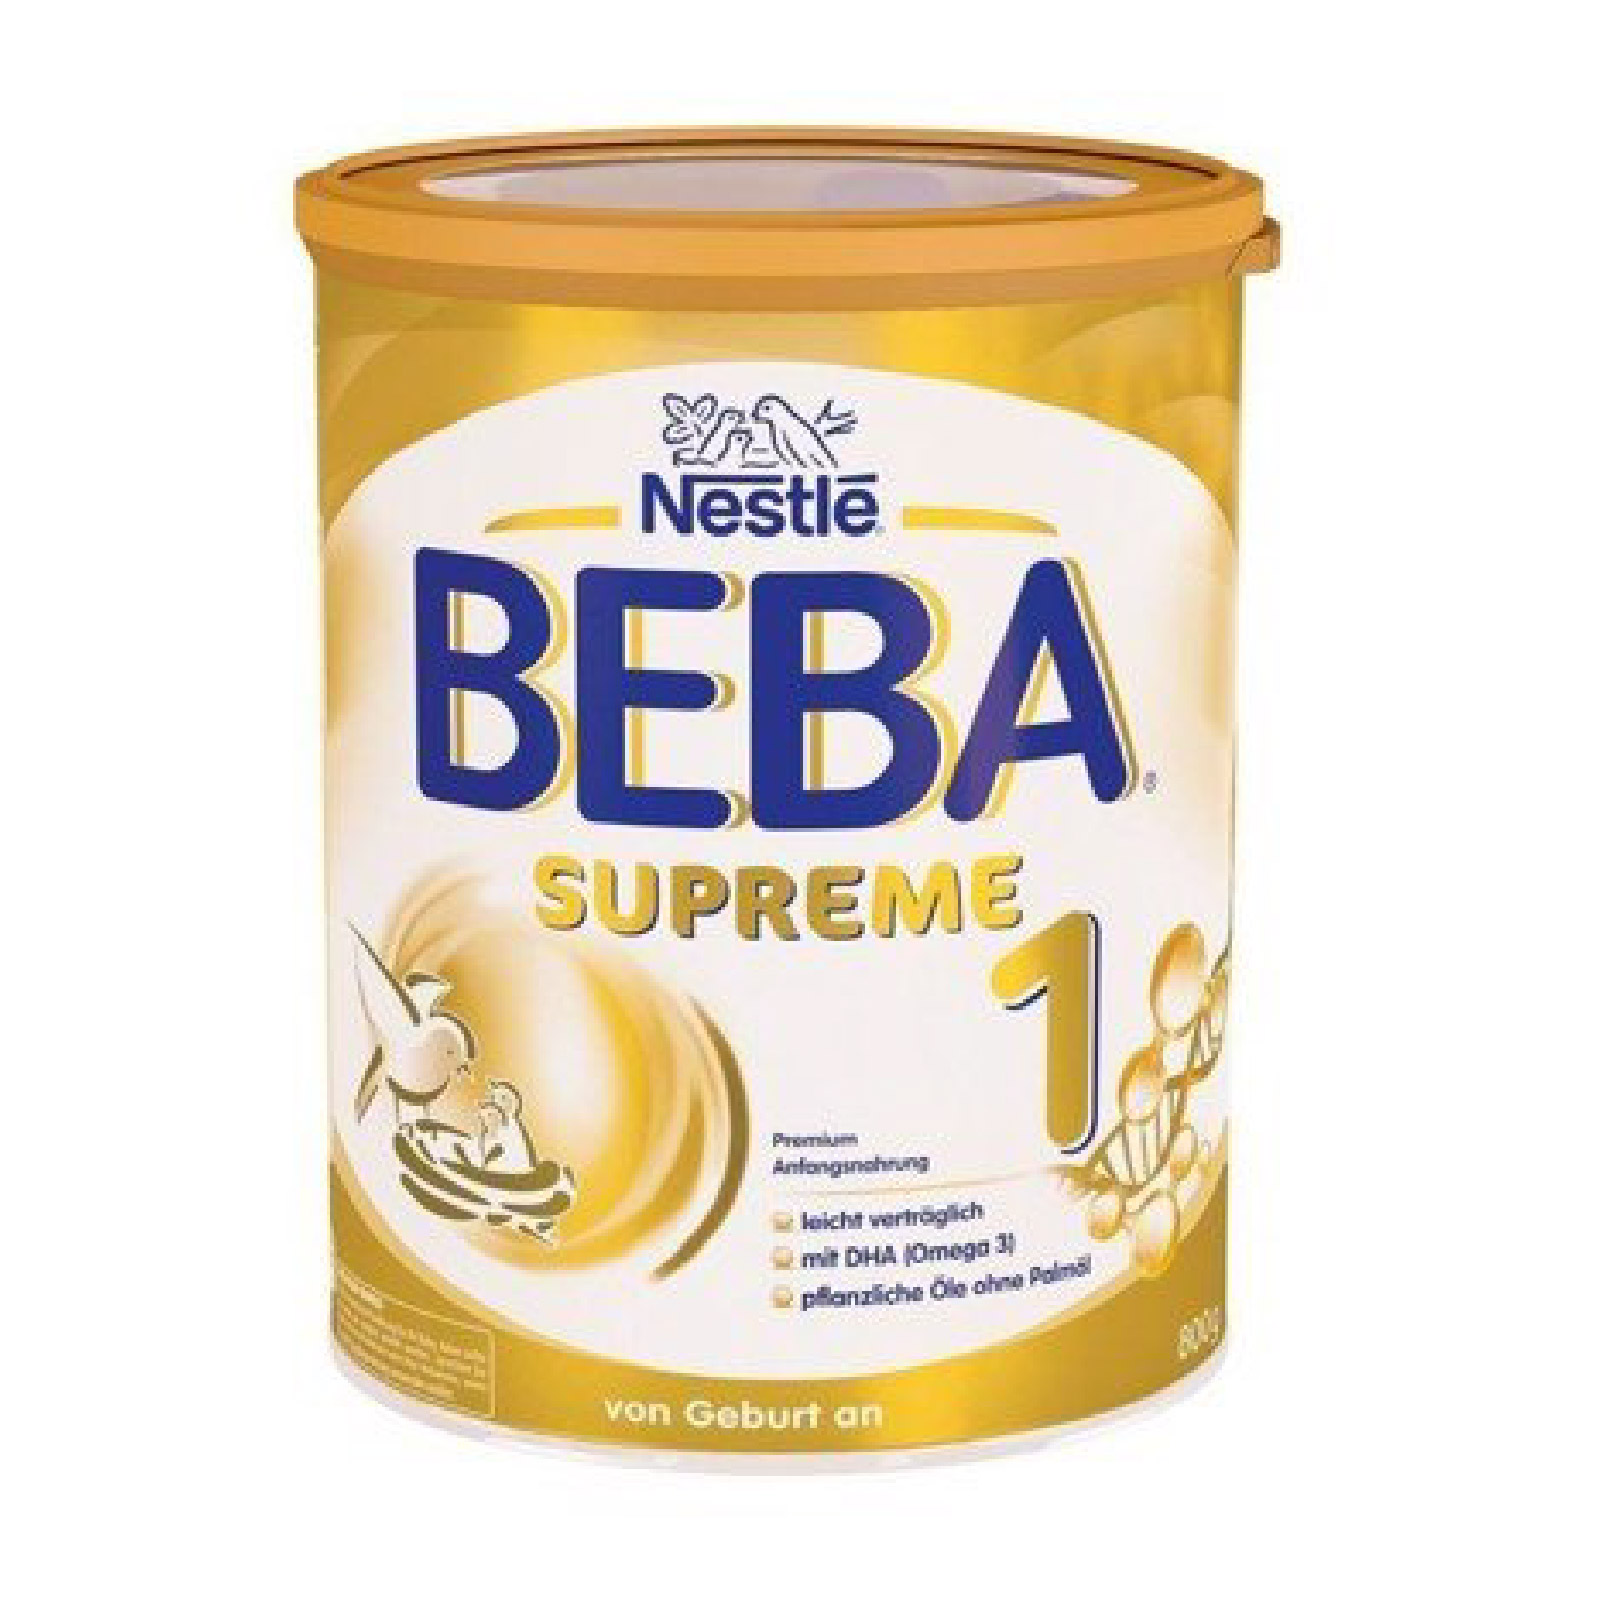 Sữa Beba Supreme số 1 nội địa Đức (trẻ từ 0 - 6 tháng) – Bé Bồng